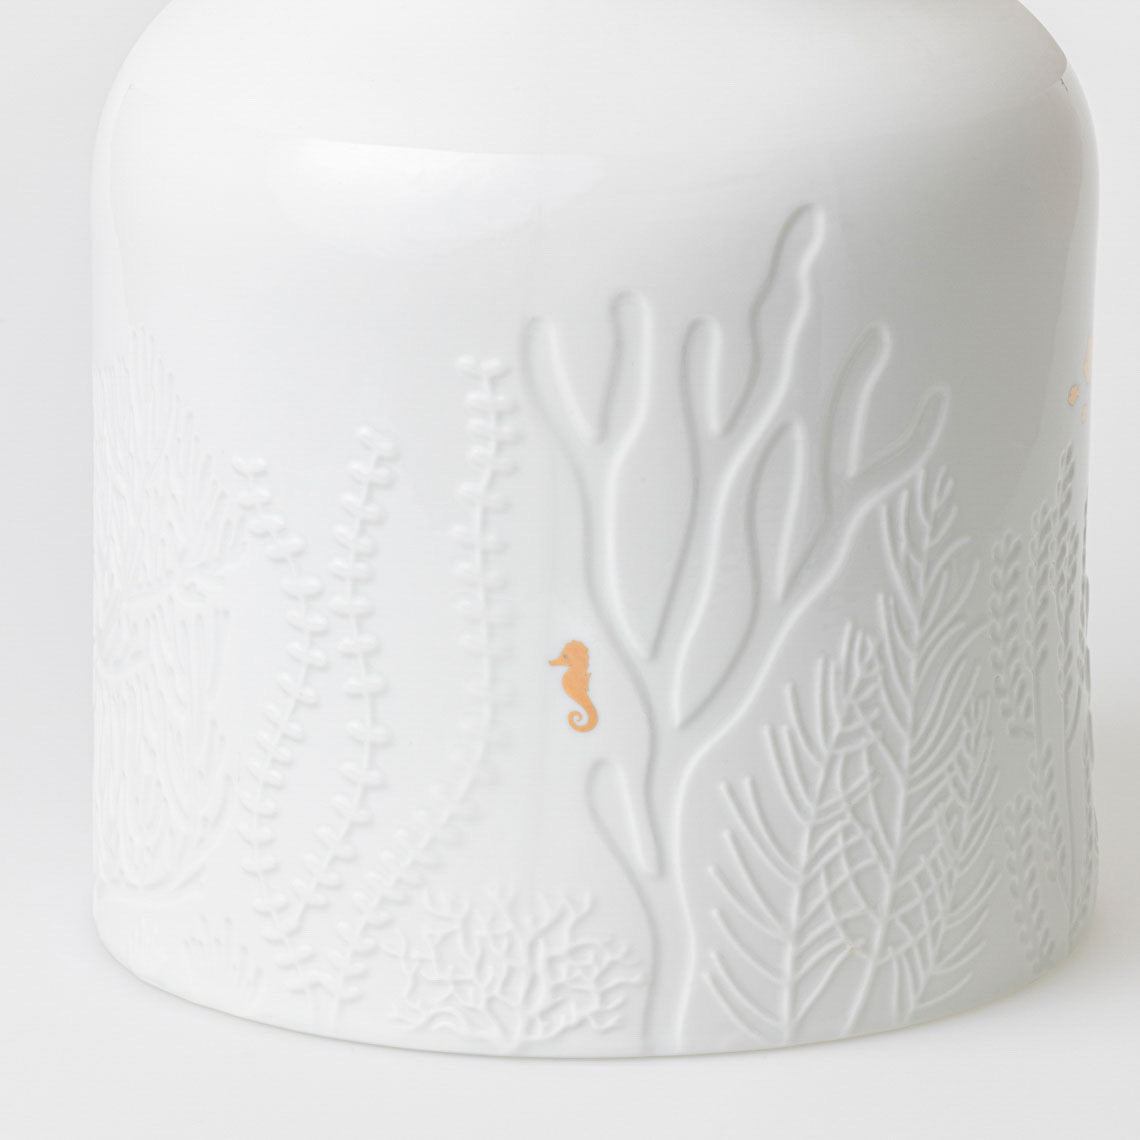 UNTERWASSERWELT Vase UNTERWASSERWELT von Räder-Design aus weißem und matten Porzellan mit goldenem Decal